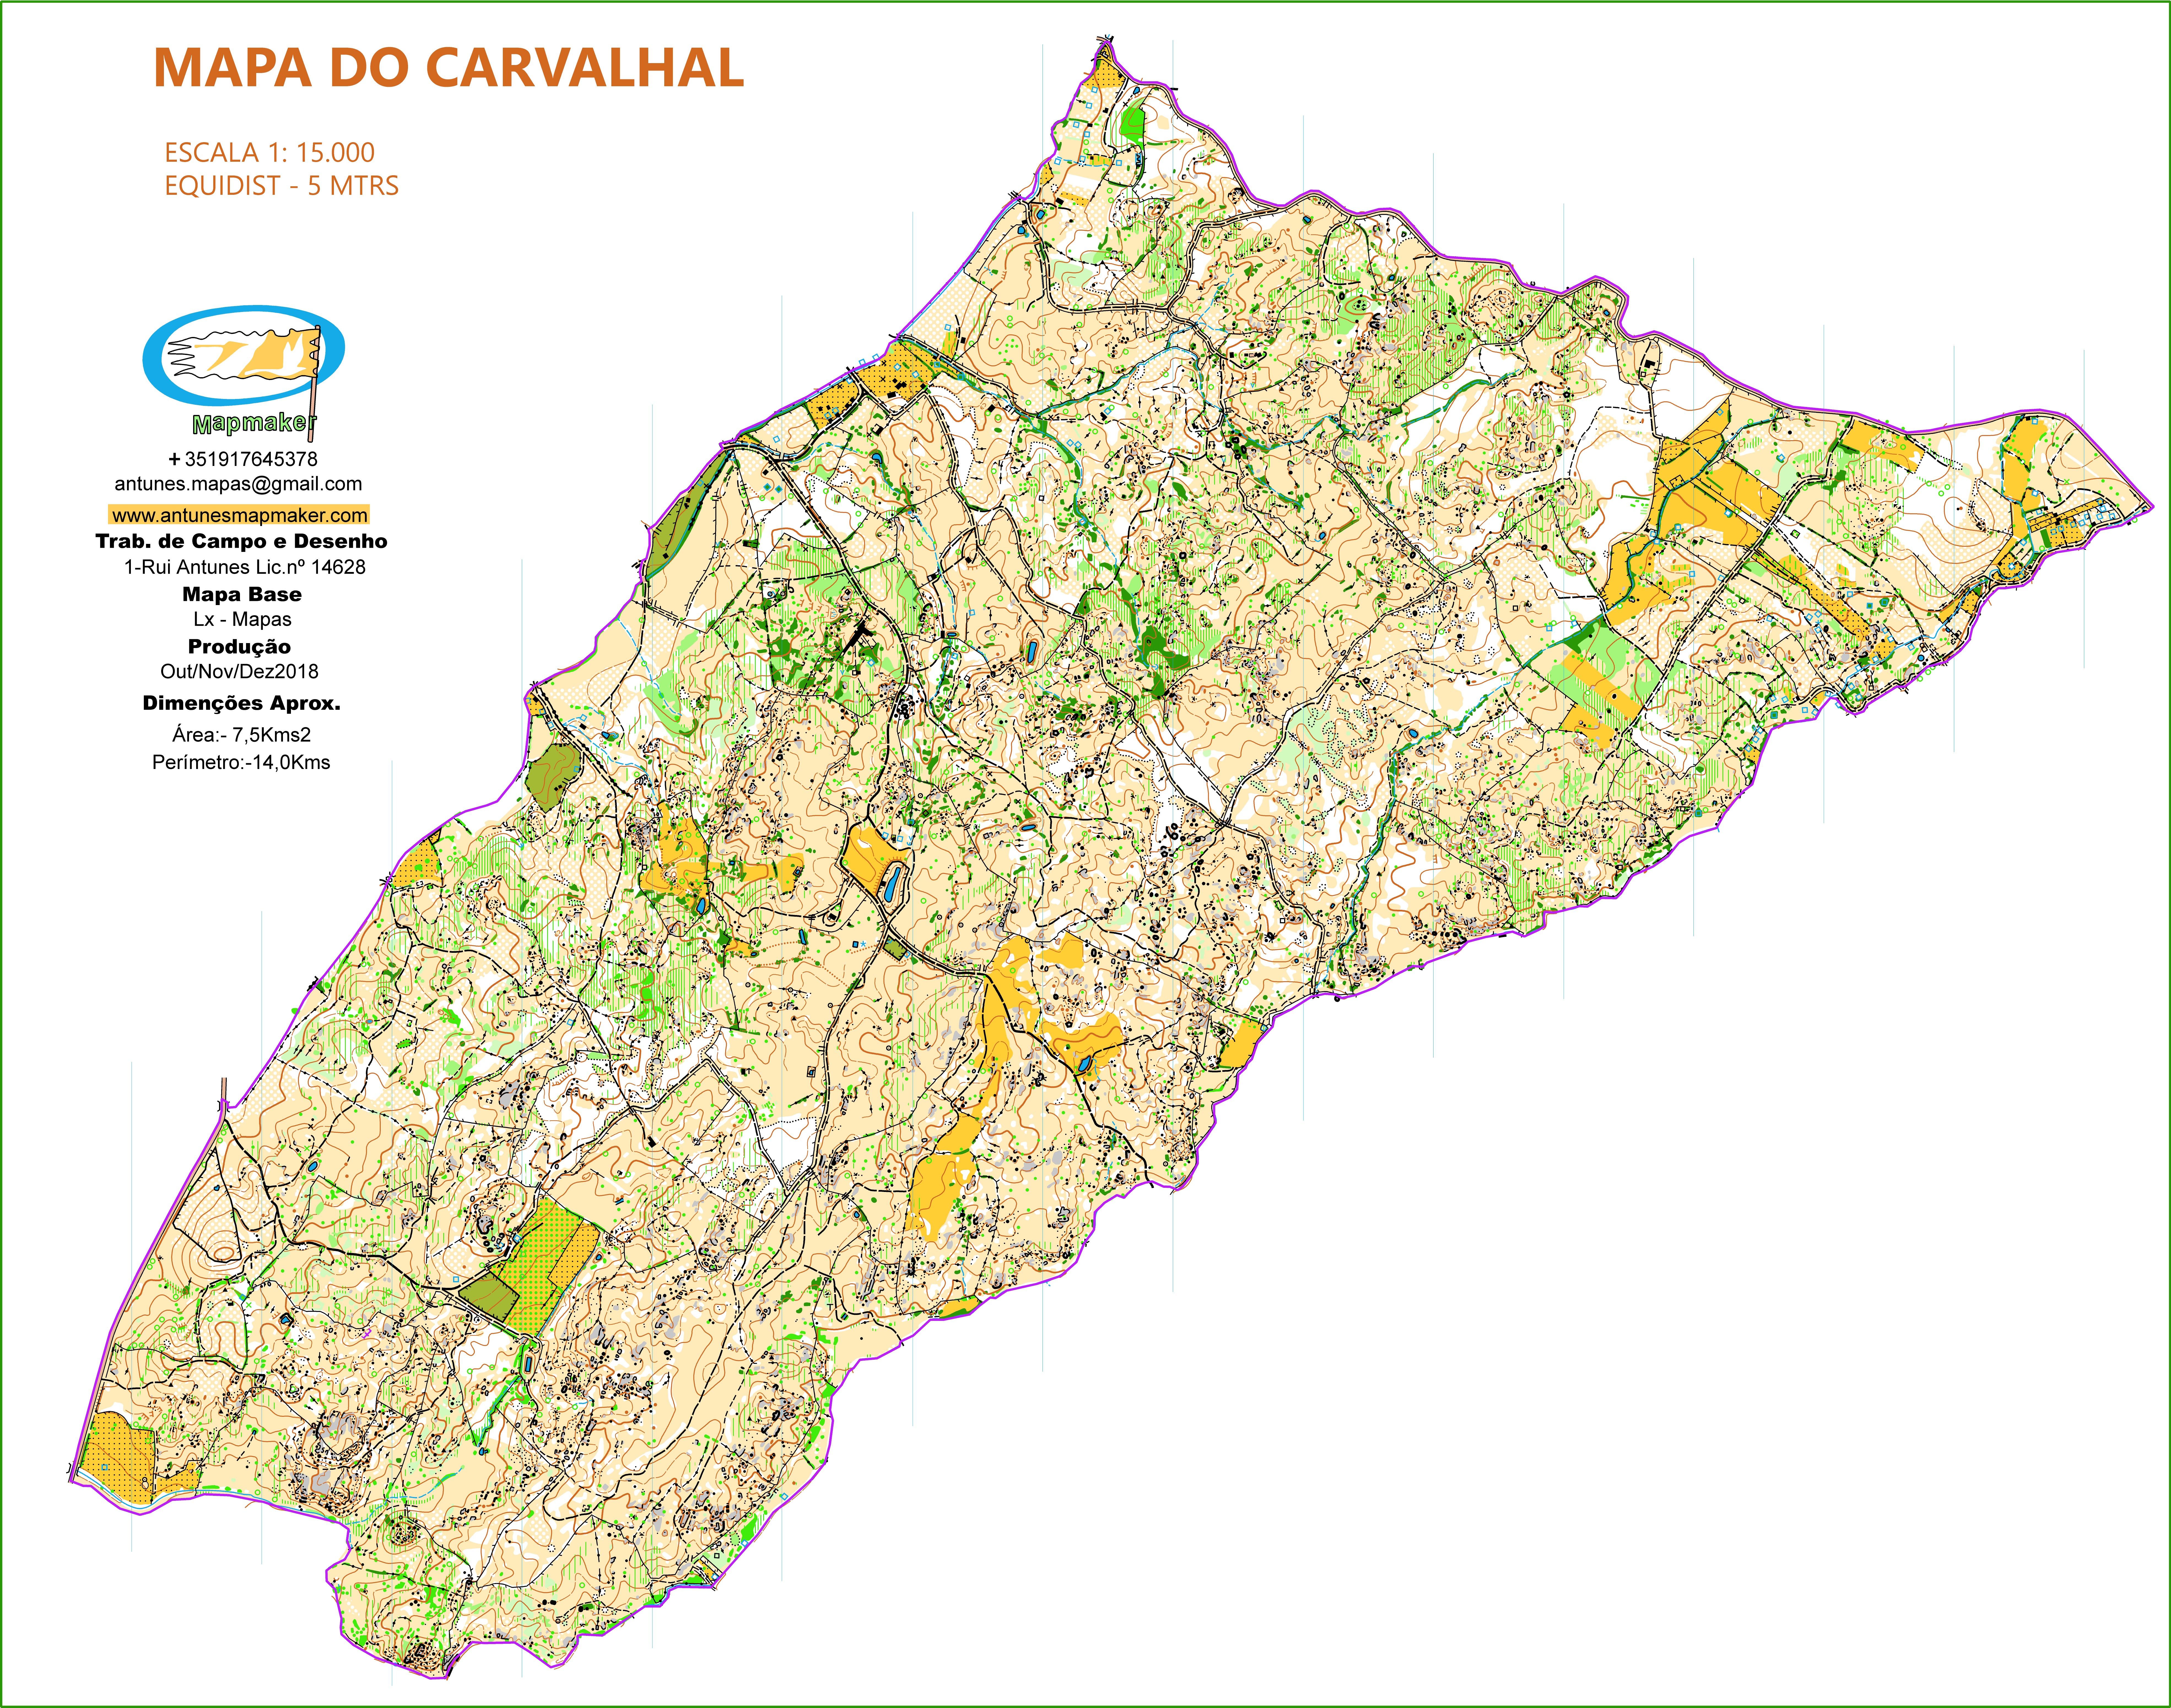 (227) Map Carvalhal2019 - Portugal-Oct / Nov / DECZ 2018